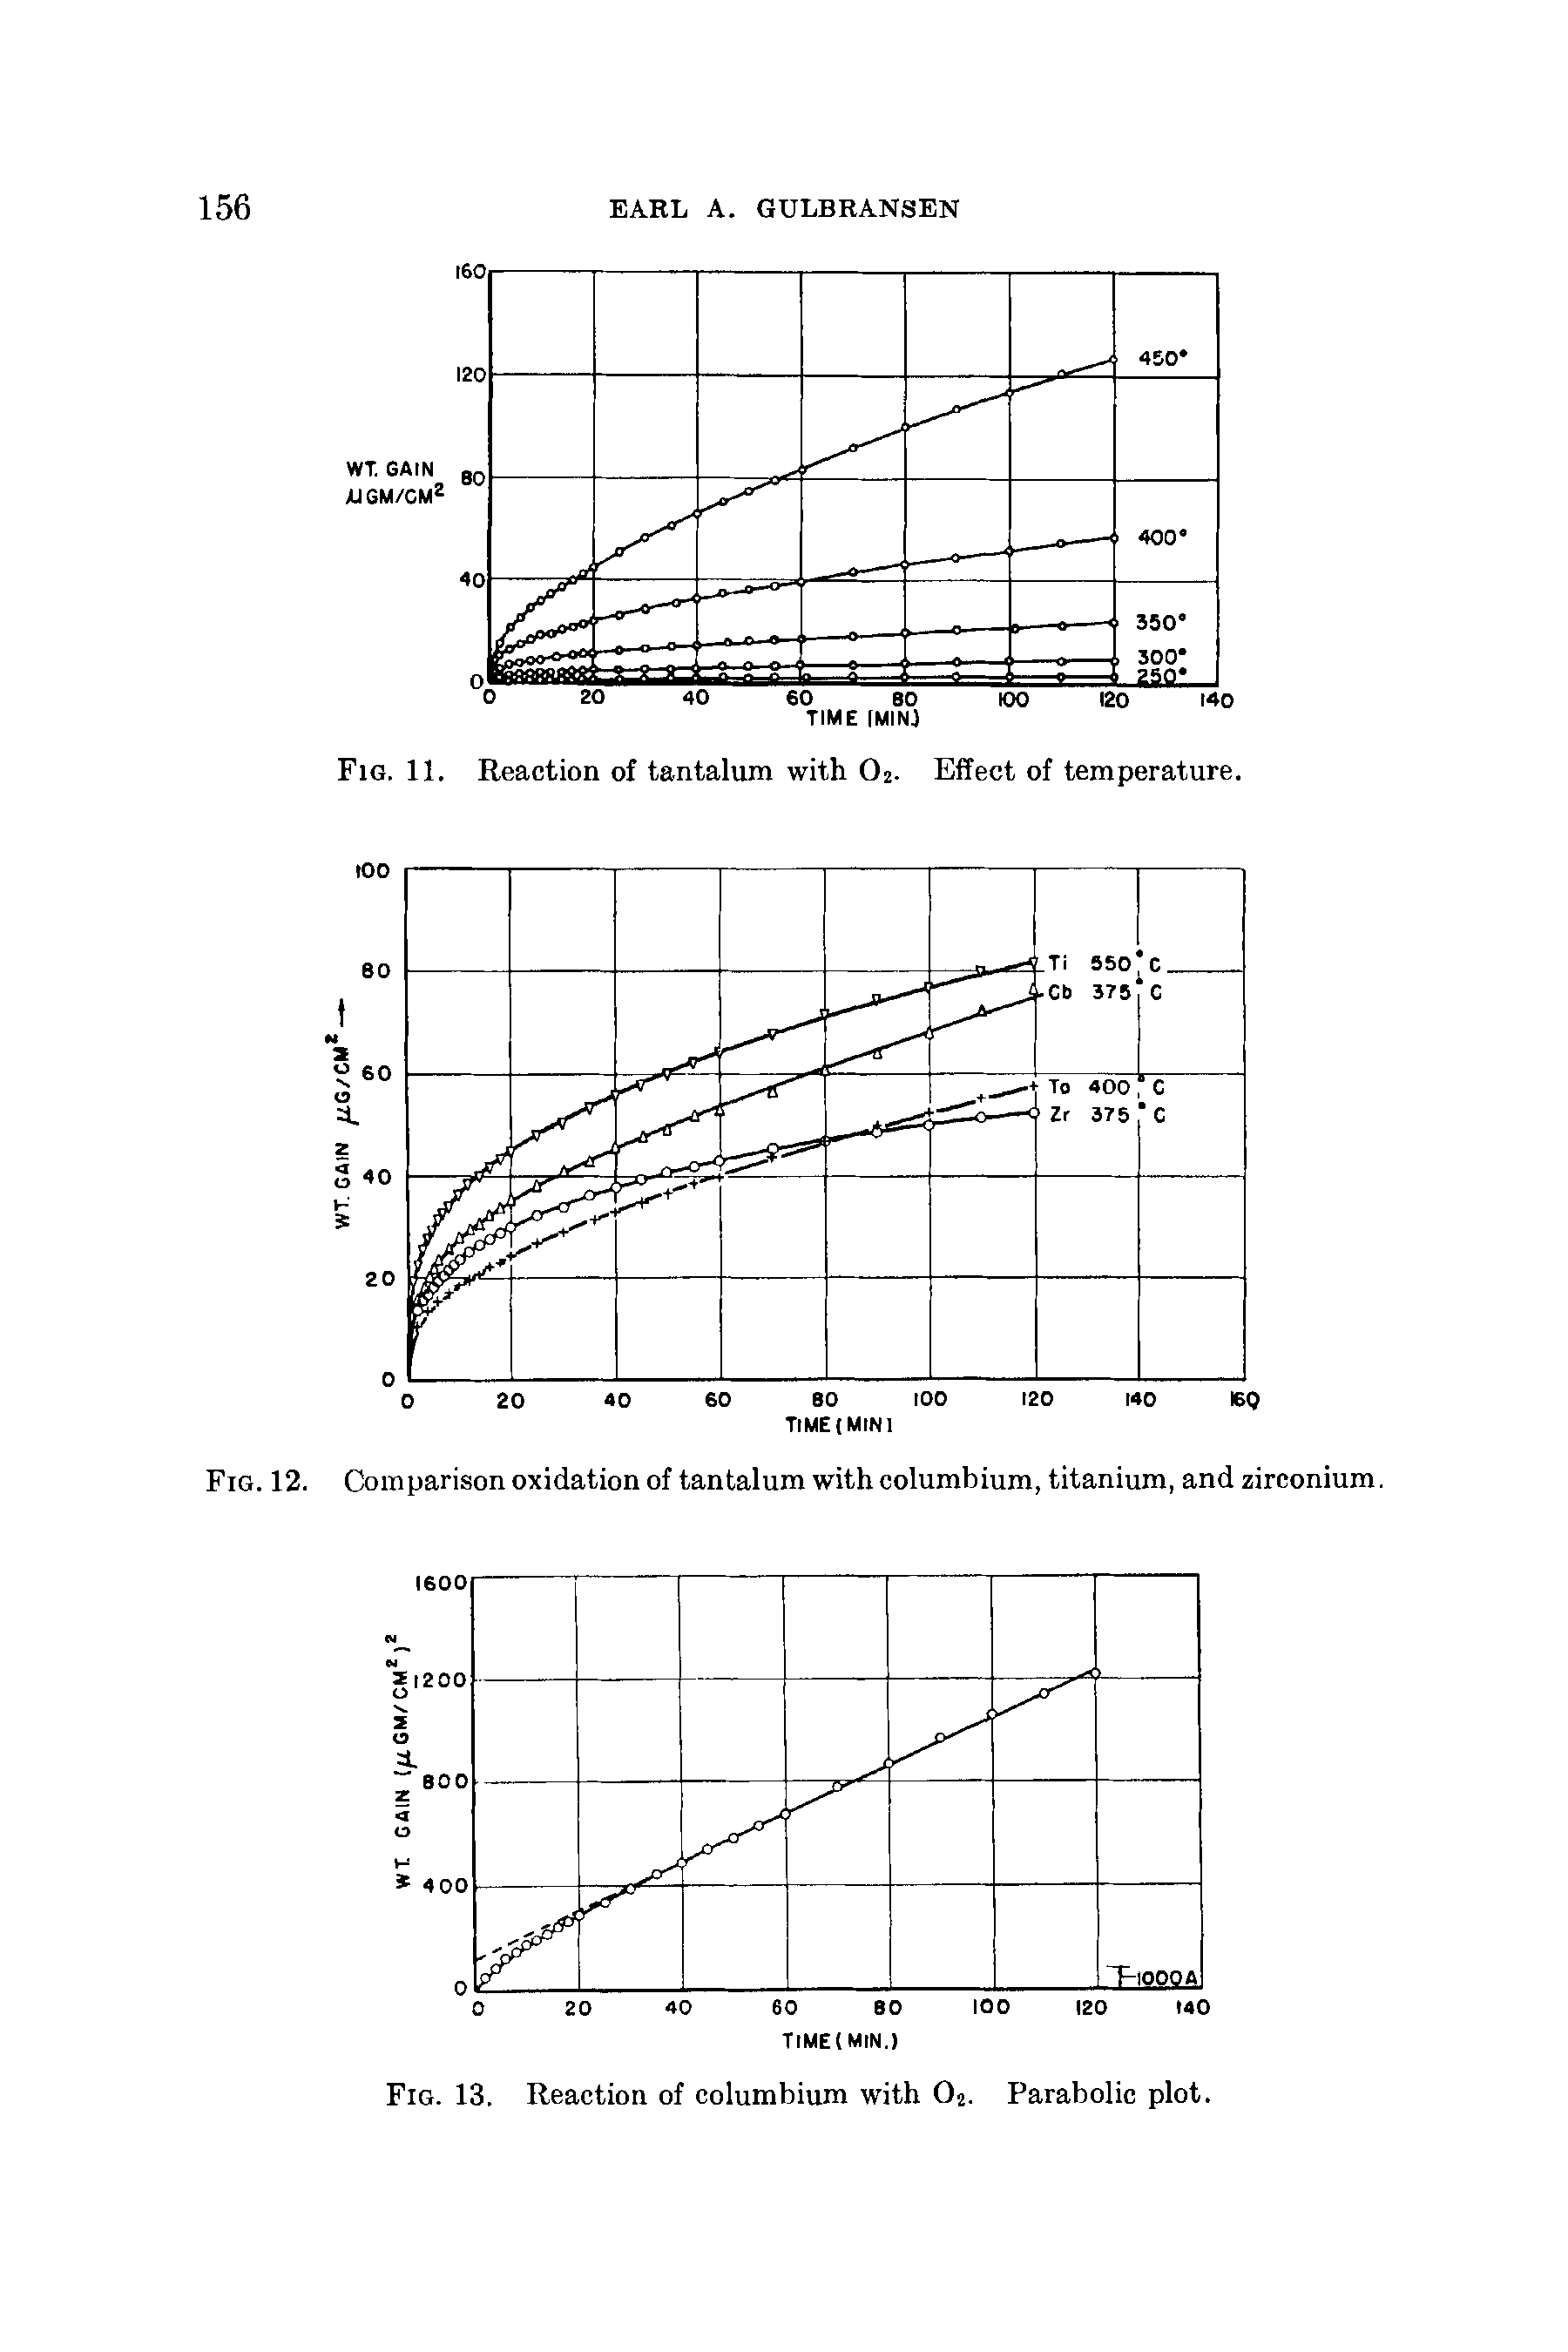 Fig. 12. Comparison oxidation of tantalum with columbium, titanium, and zirconium.